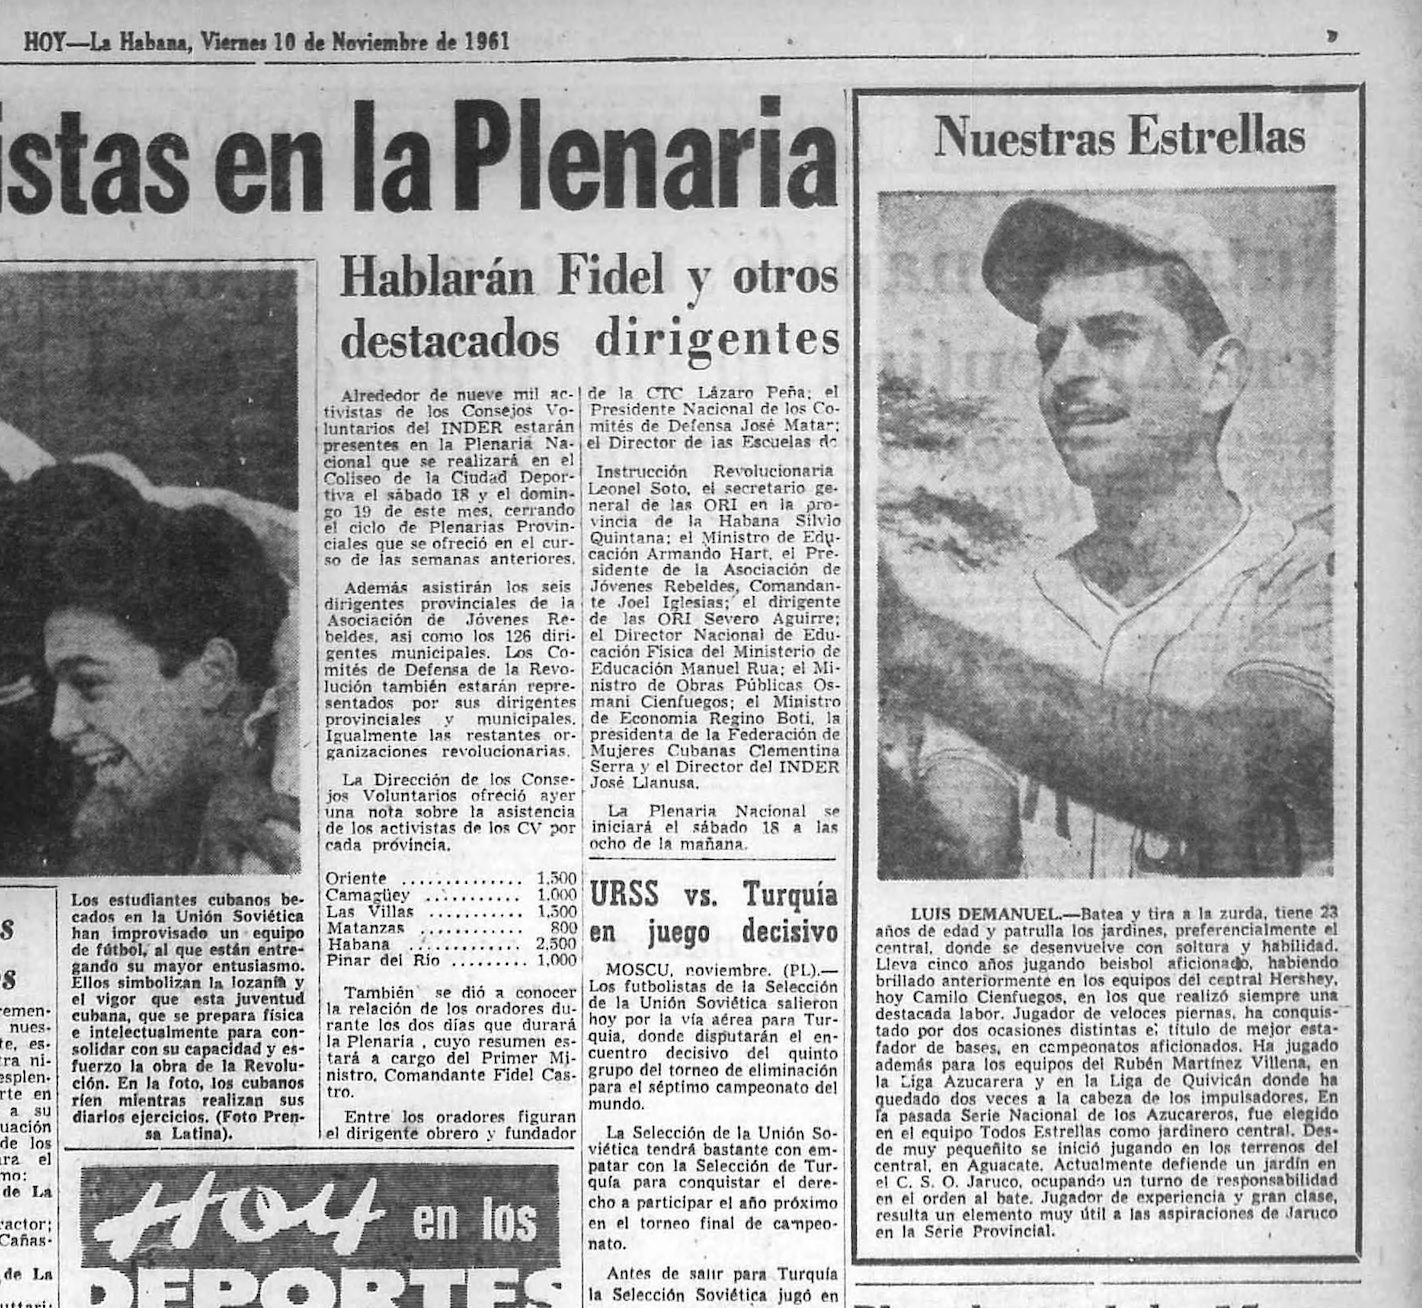 De grandes ligas a peloteros aficionados: El salto al vacío del beisbol en Cuba entre 1961 y 1962